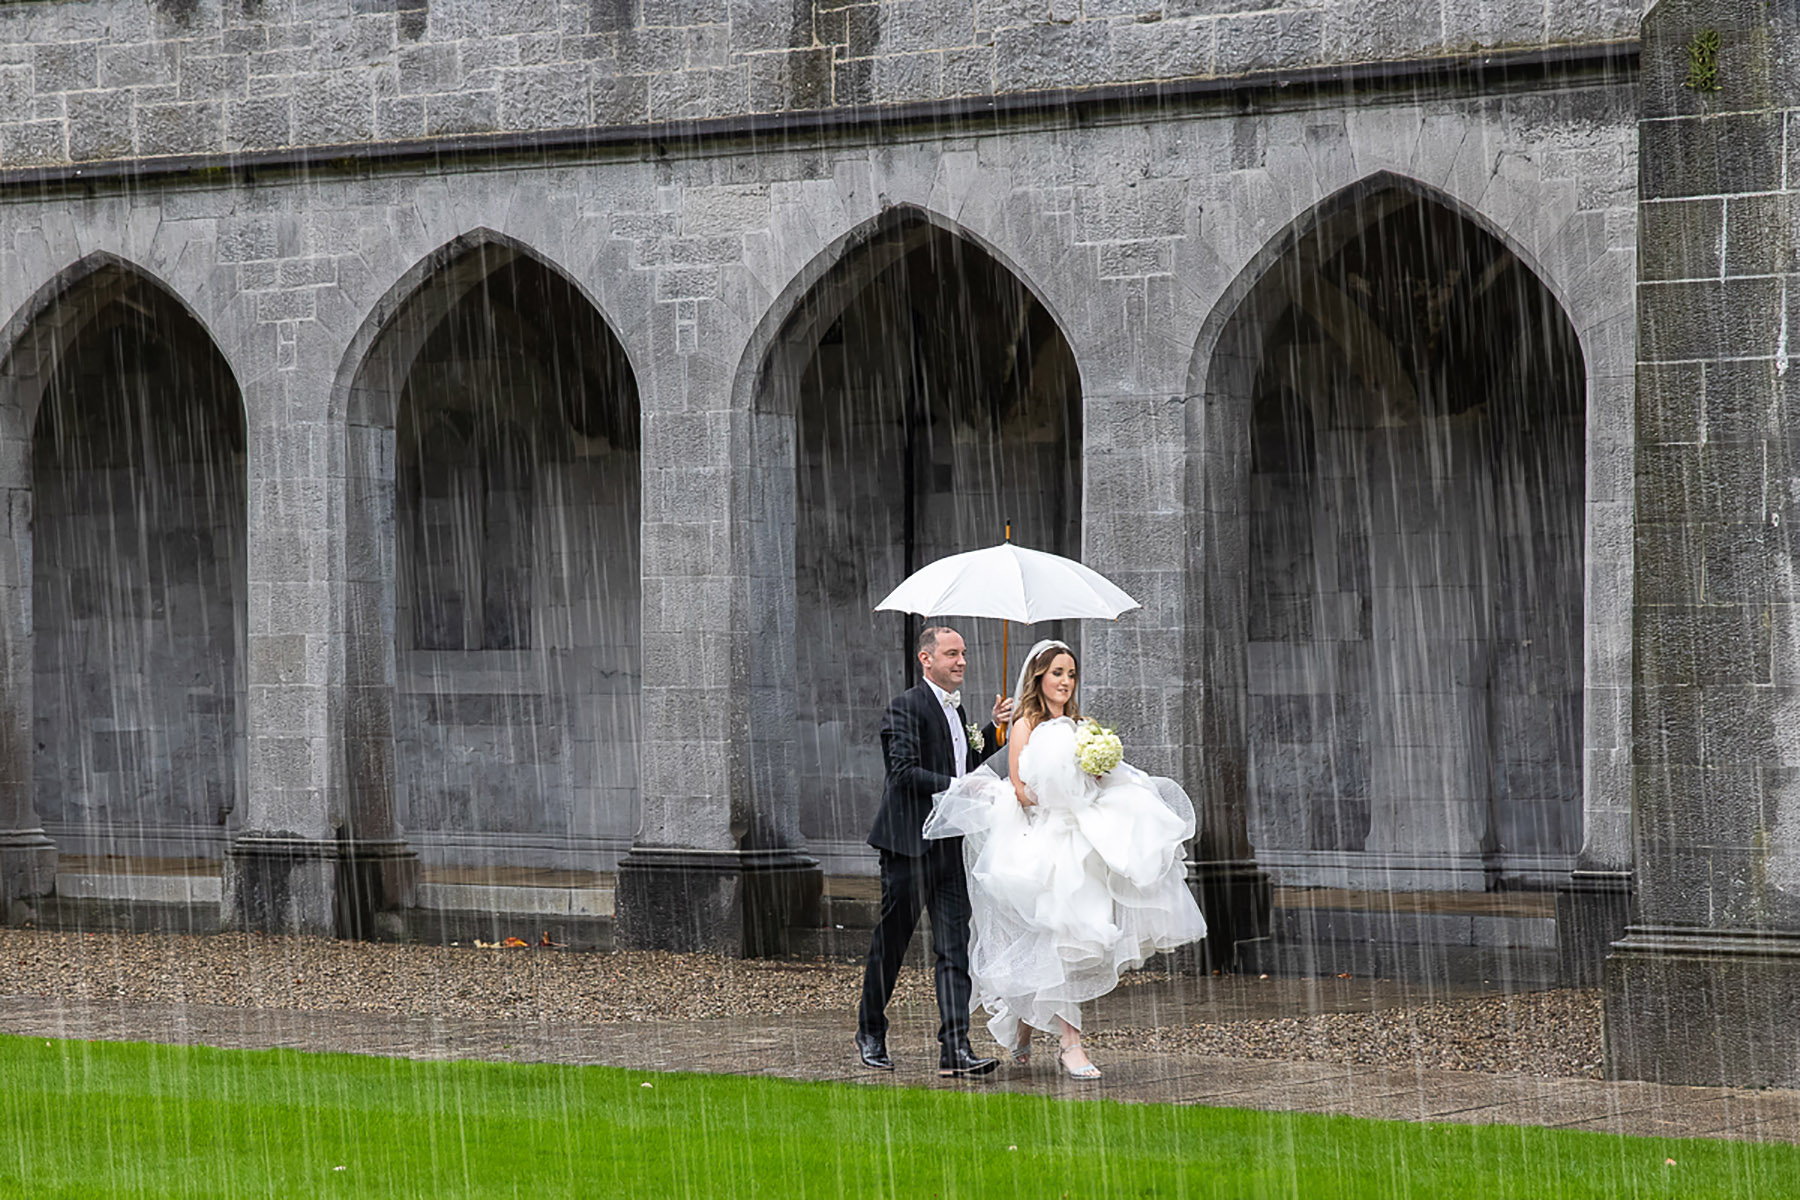 Galway Bay Hotel Wedding